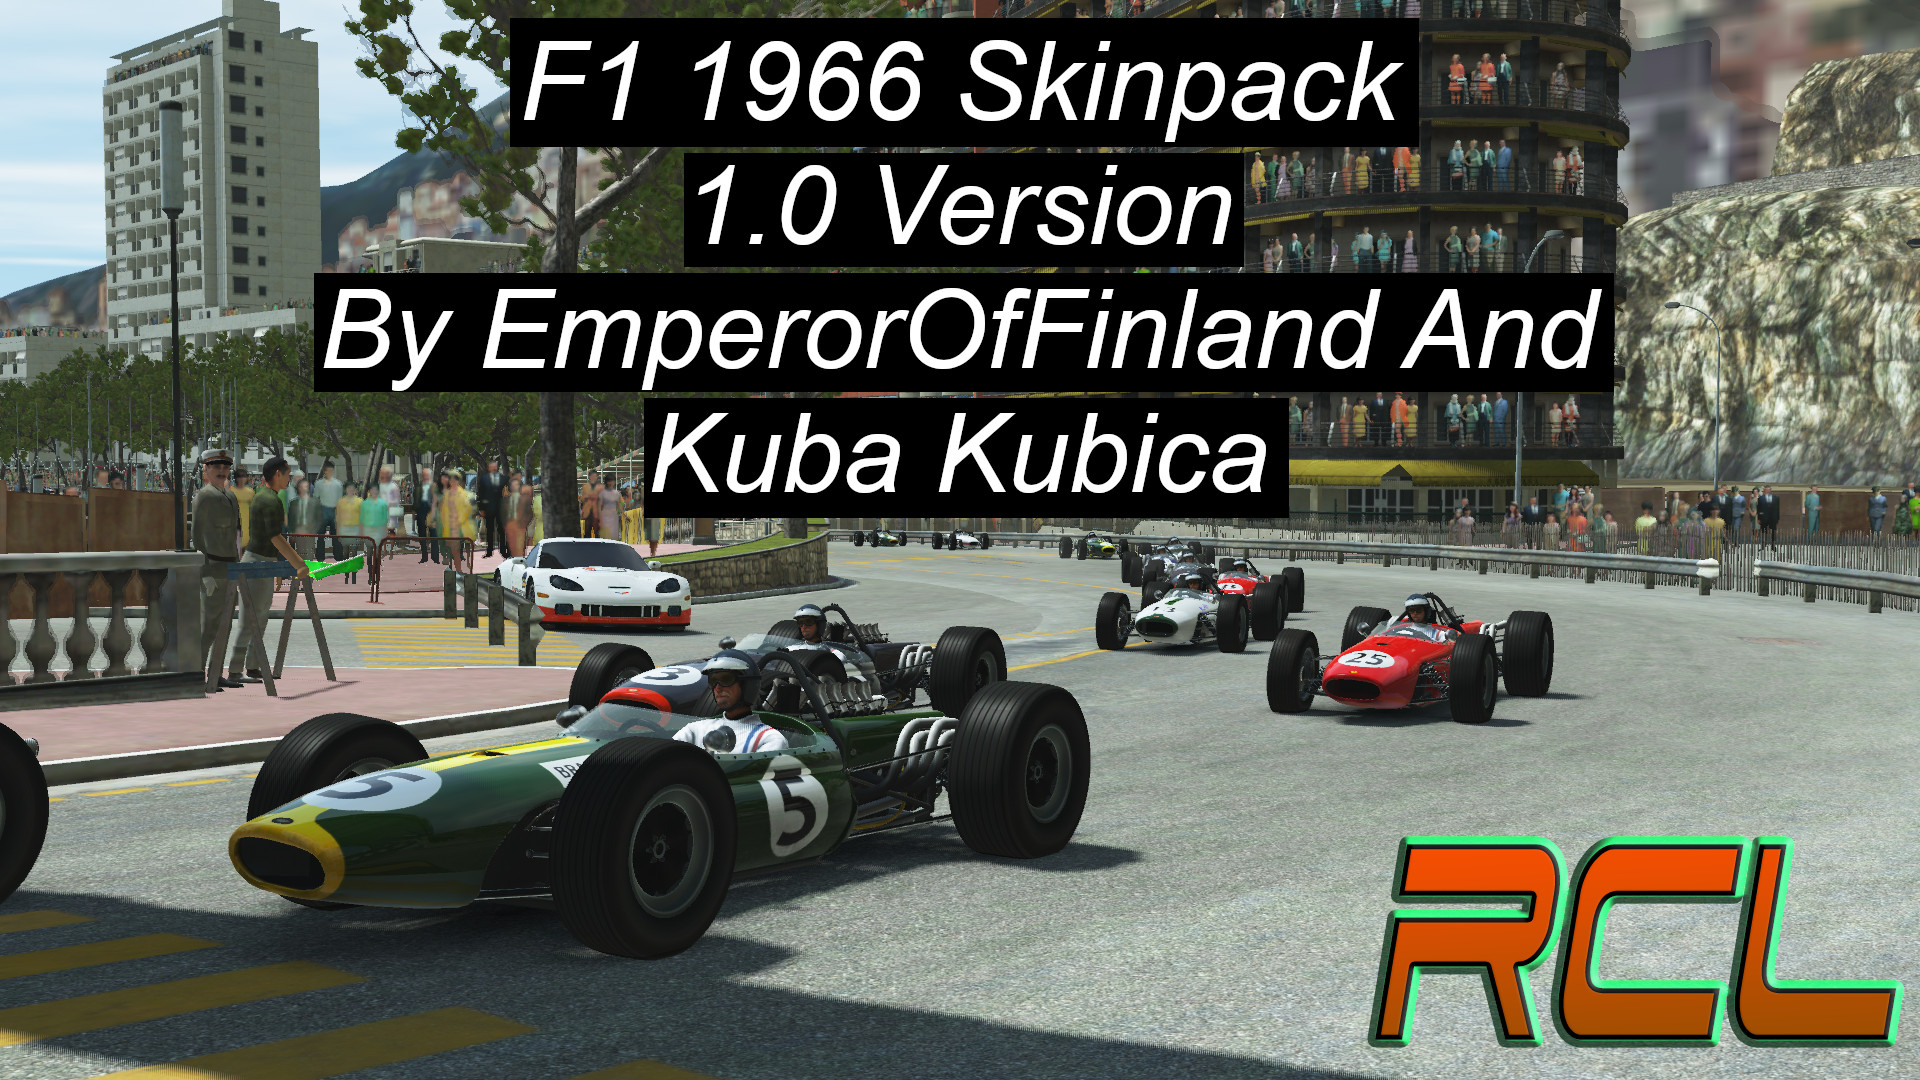 Rfactor F1 1966 Skinpack title.jpg